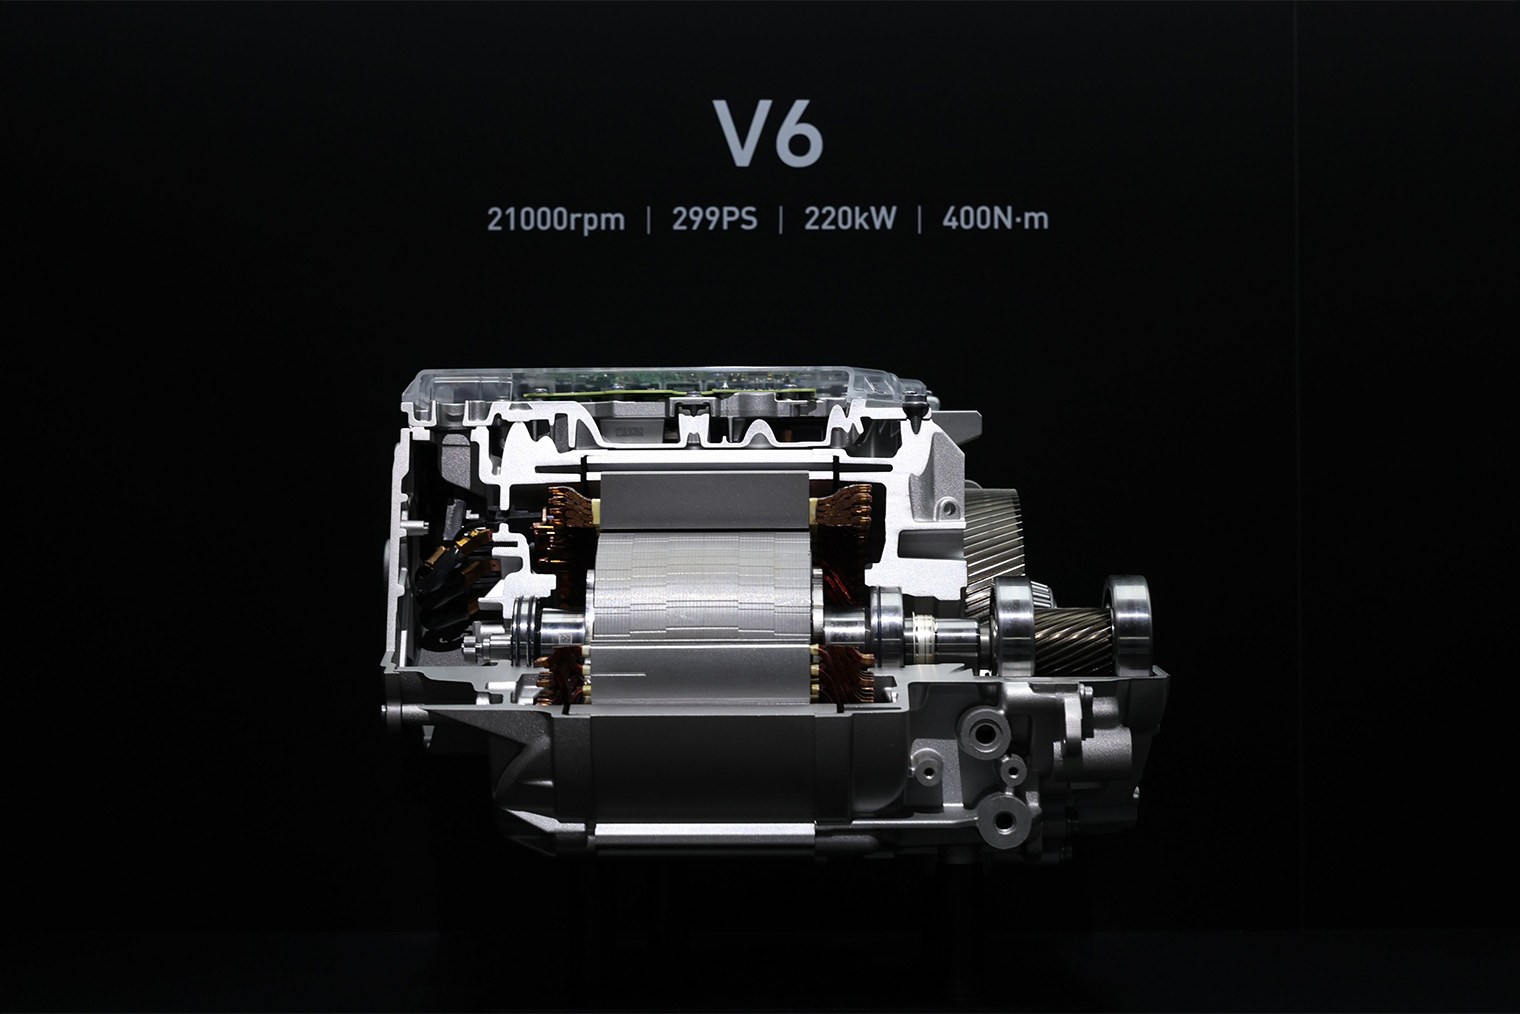 Двигатель Hyper engine V6. Источник: Lei Jun (CEO Xiaomi) / X